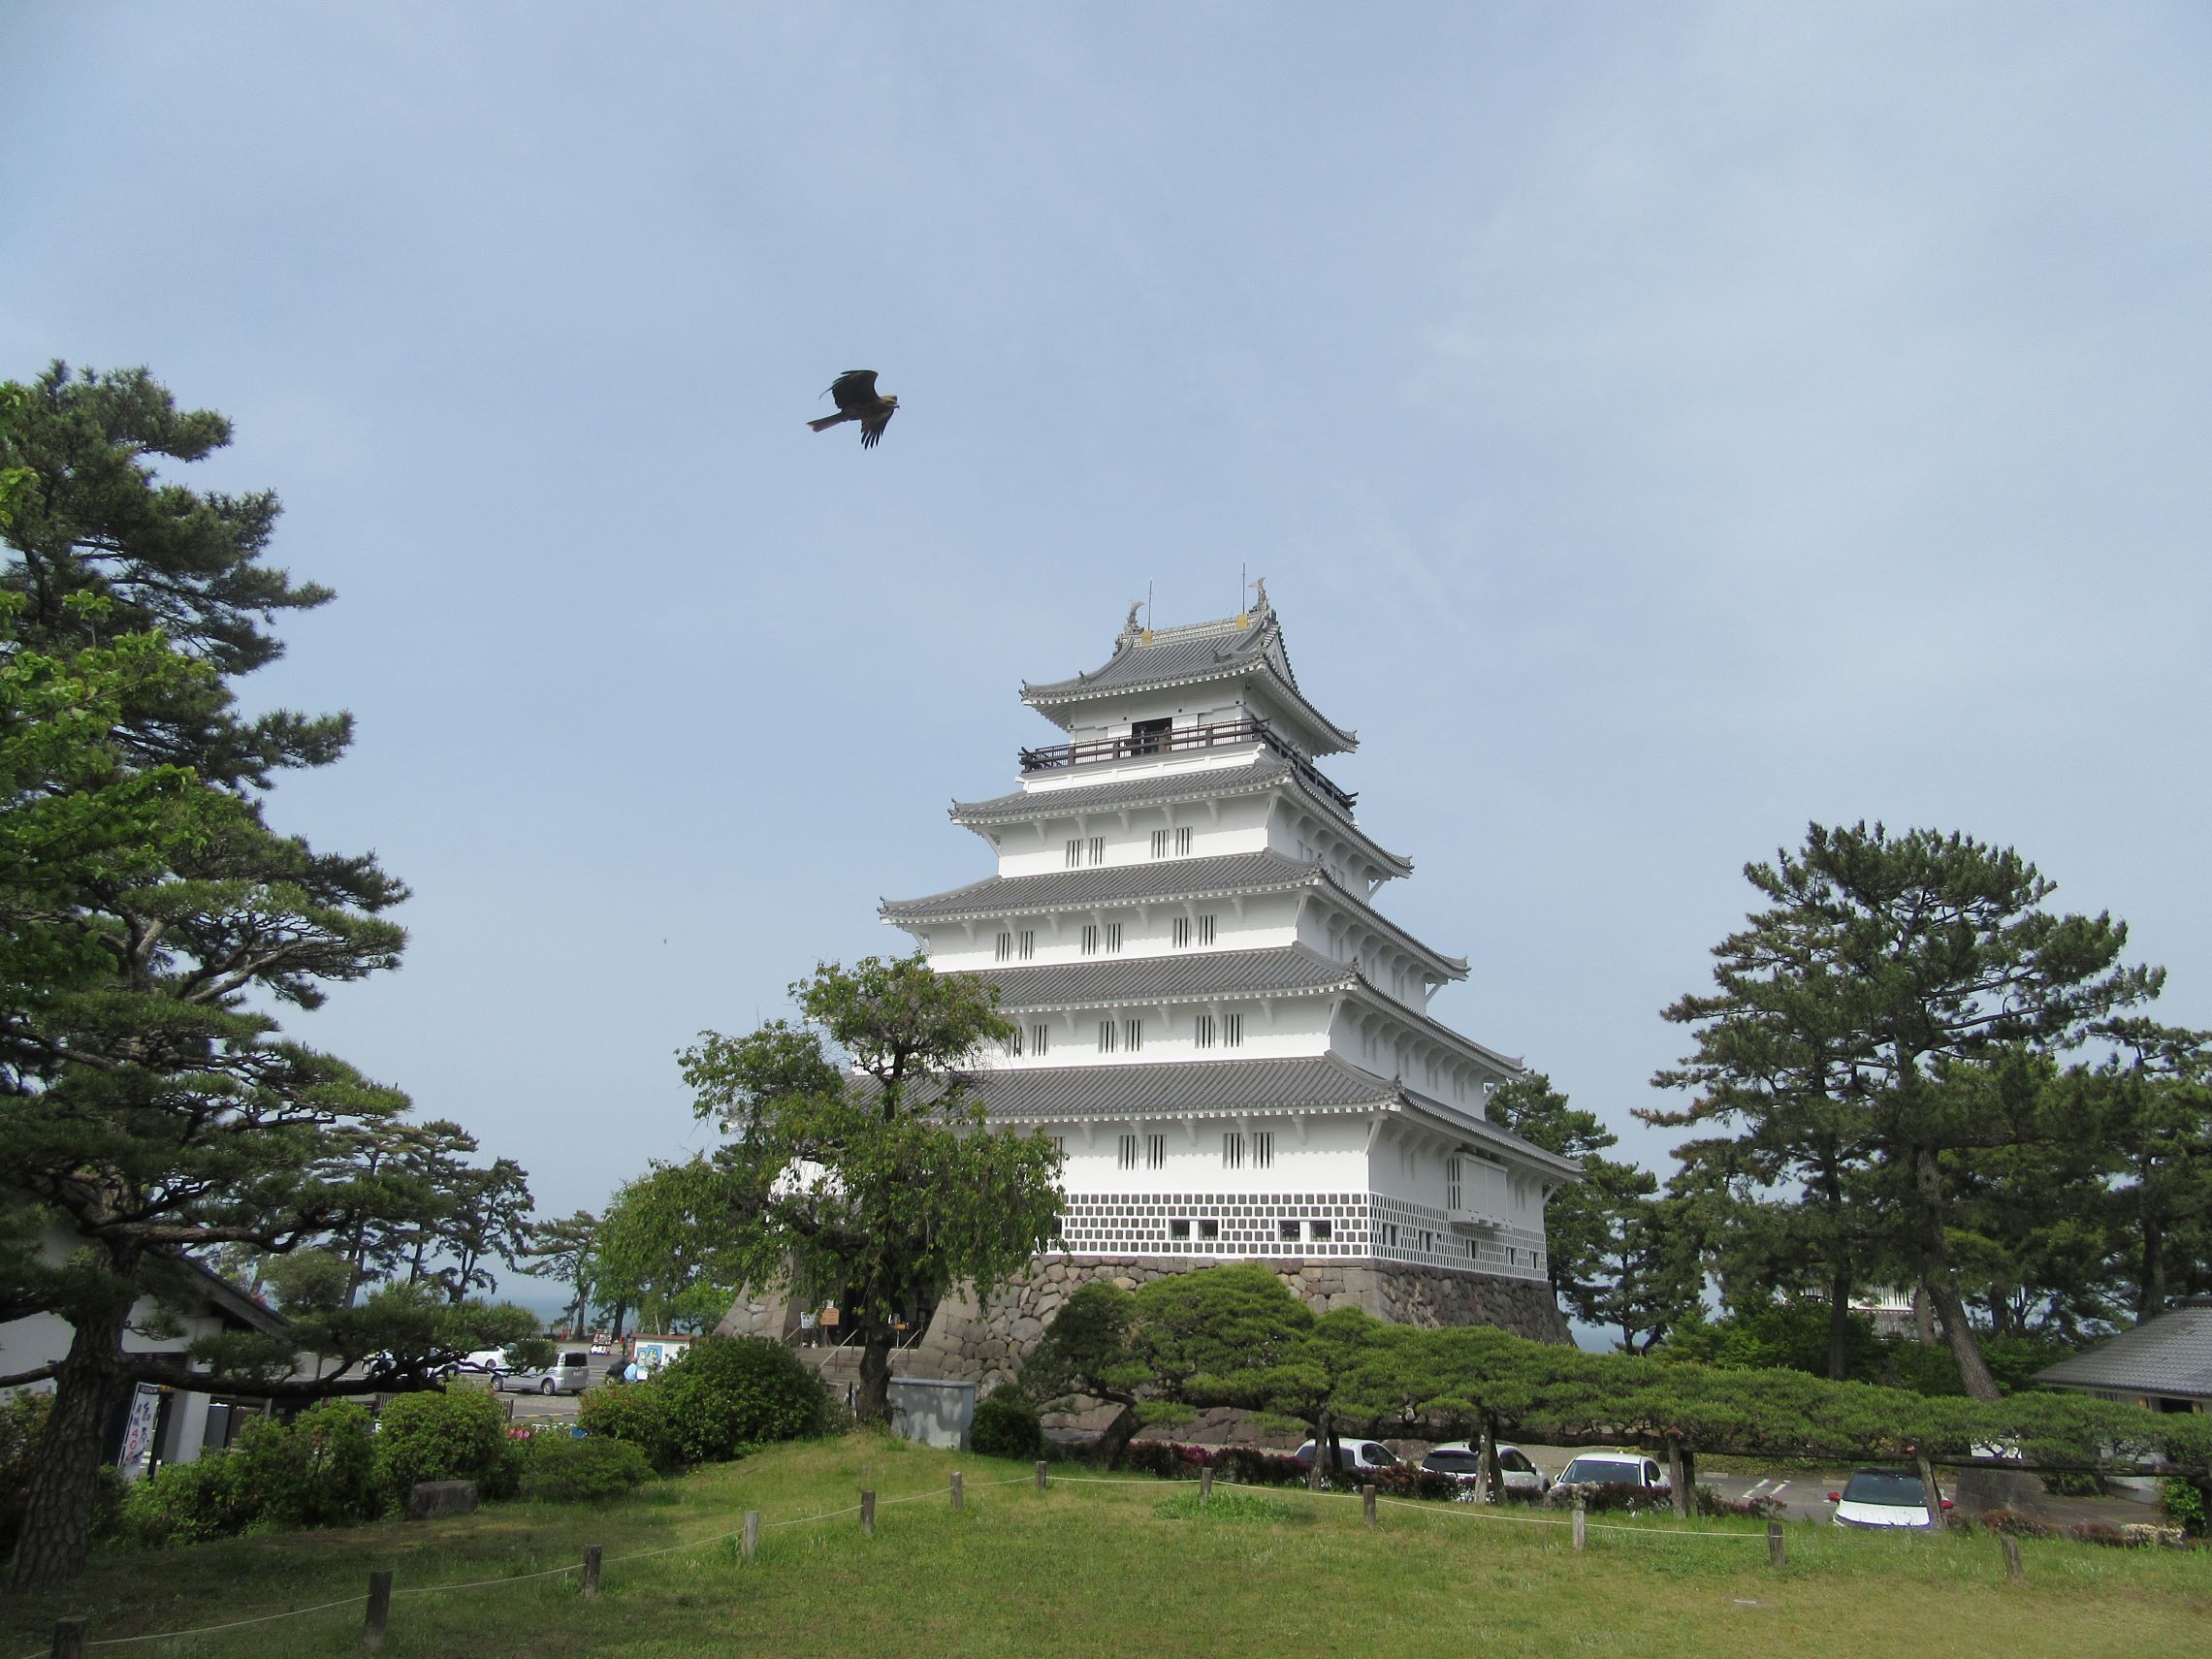 島原城の天守閣と、その近くを飛ぶ鳥の写真です。松の木といい、美しい風景です。